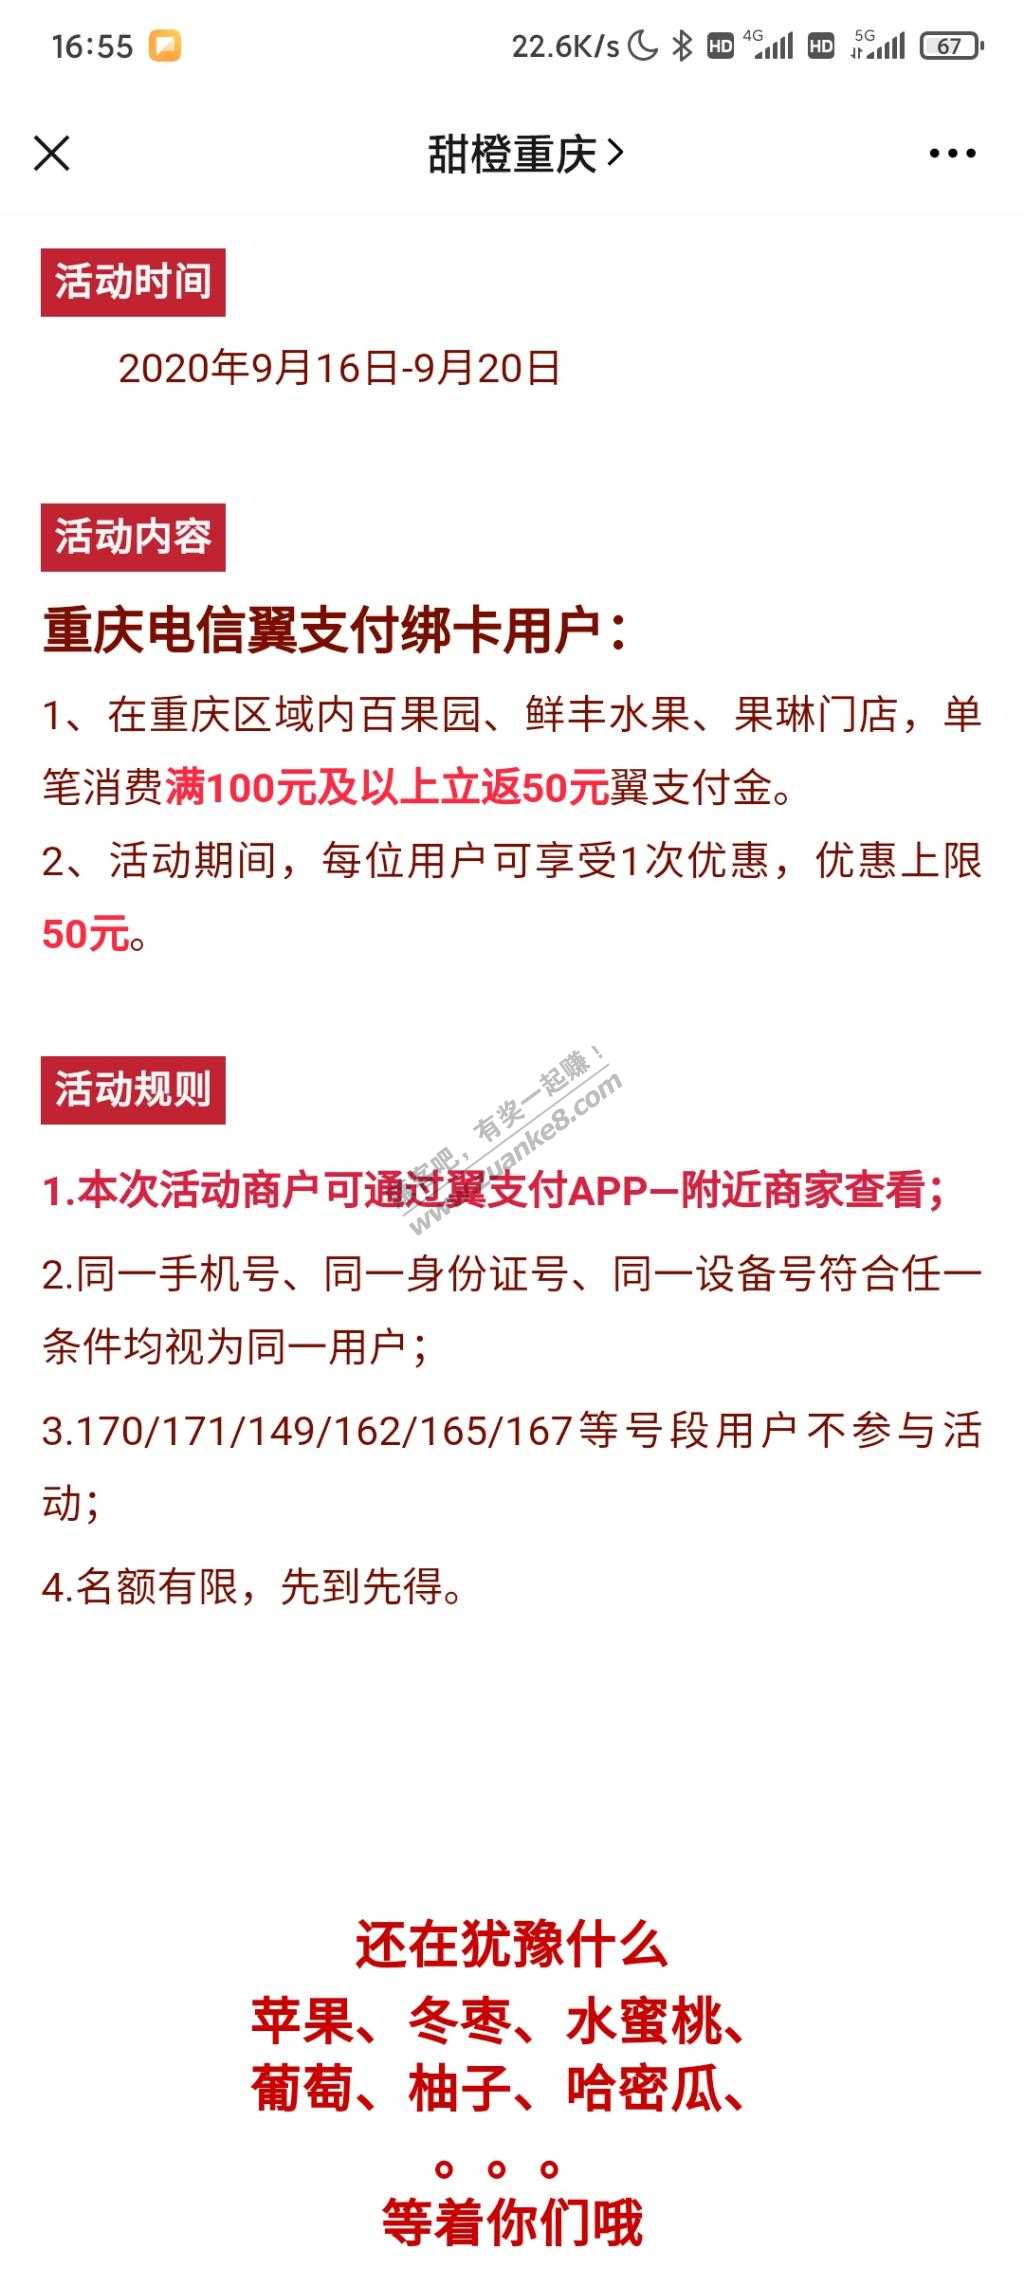 重庆电信翼支付超市夹水果活动-惠小助(52huixz.com)